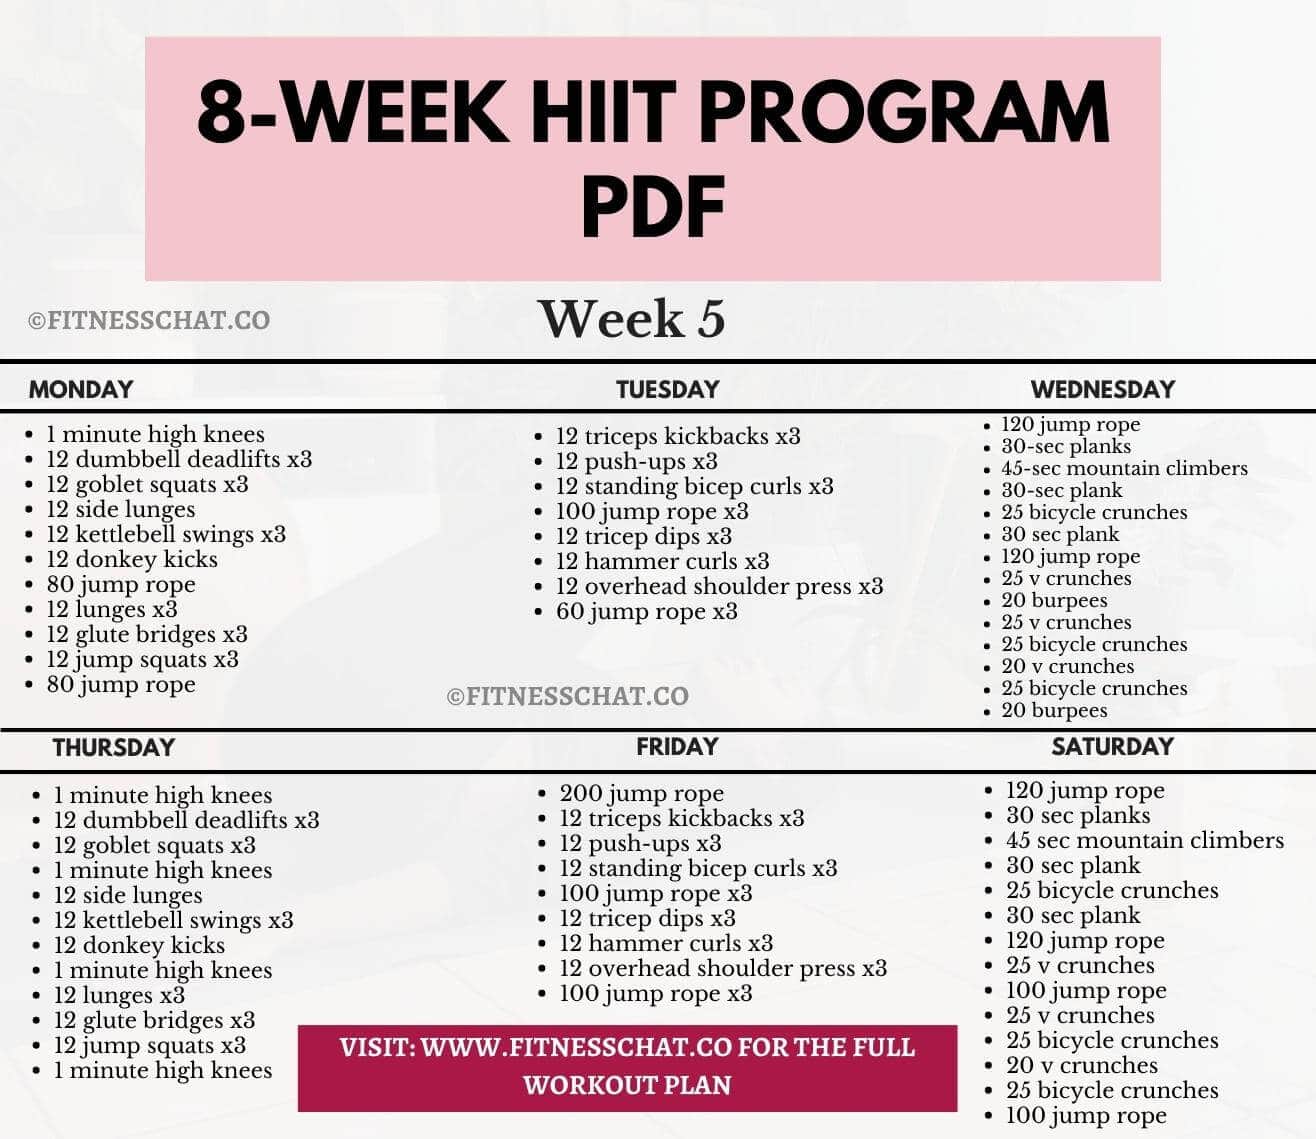 8-week hiit program pdf week 5 